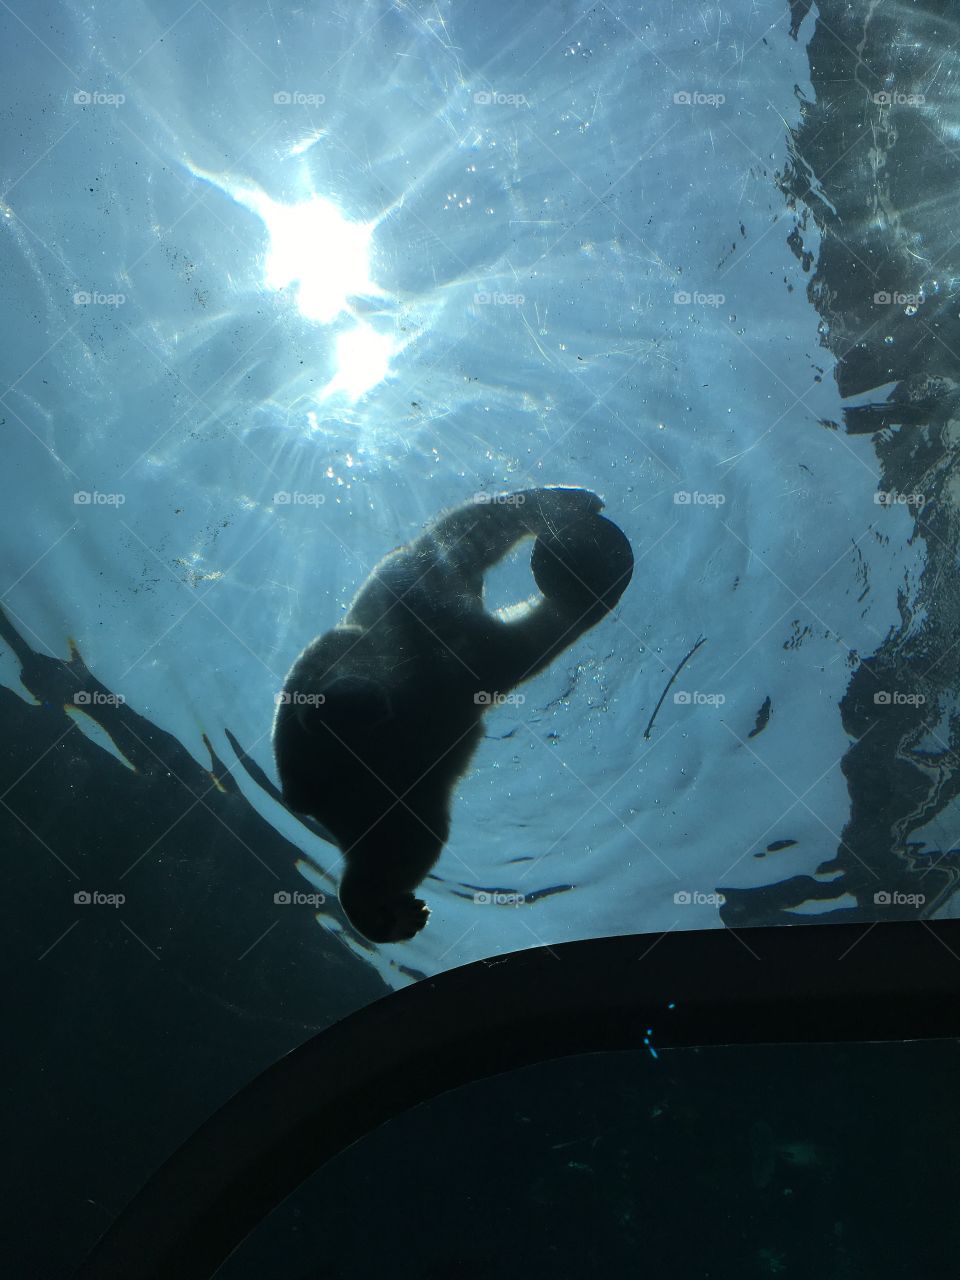 Polar bear in water under the sun